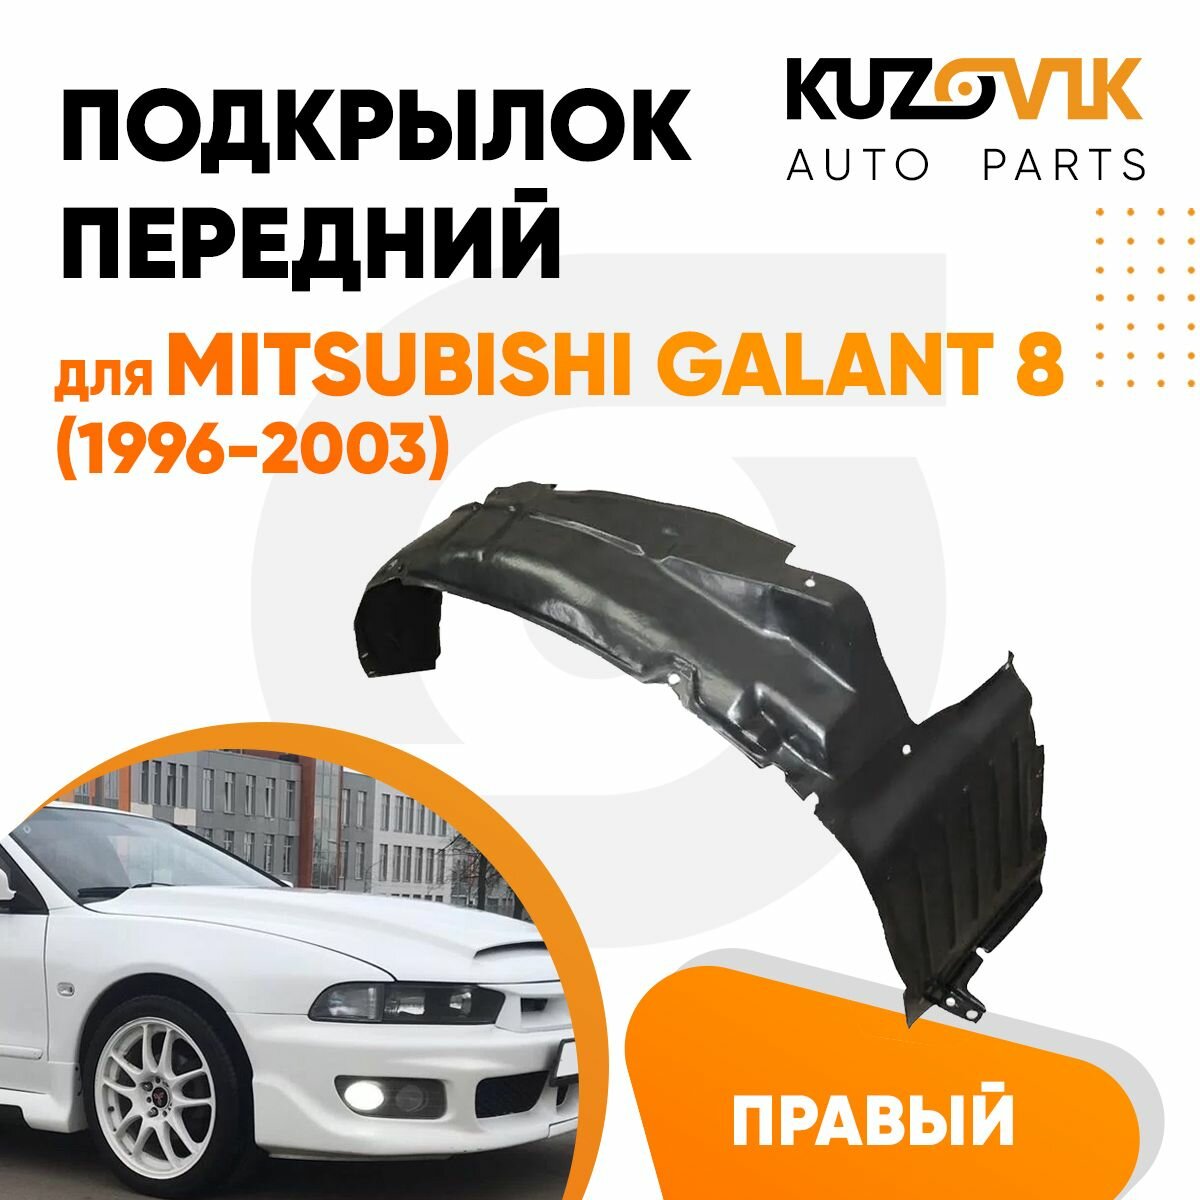 Подкрылок передний для Митсубиси Галант Mitsubishi Galant 8 (1996-2003) правый